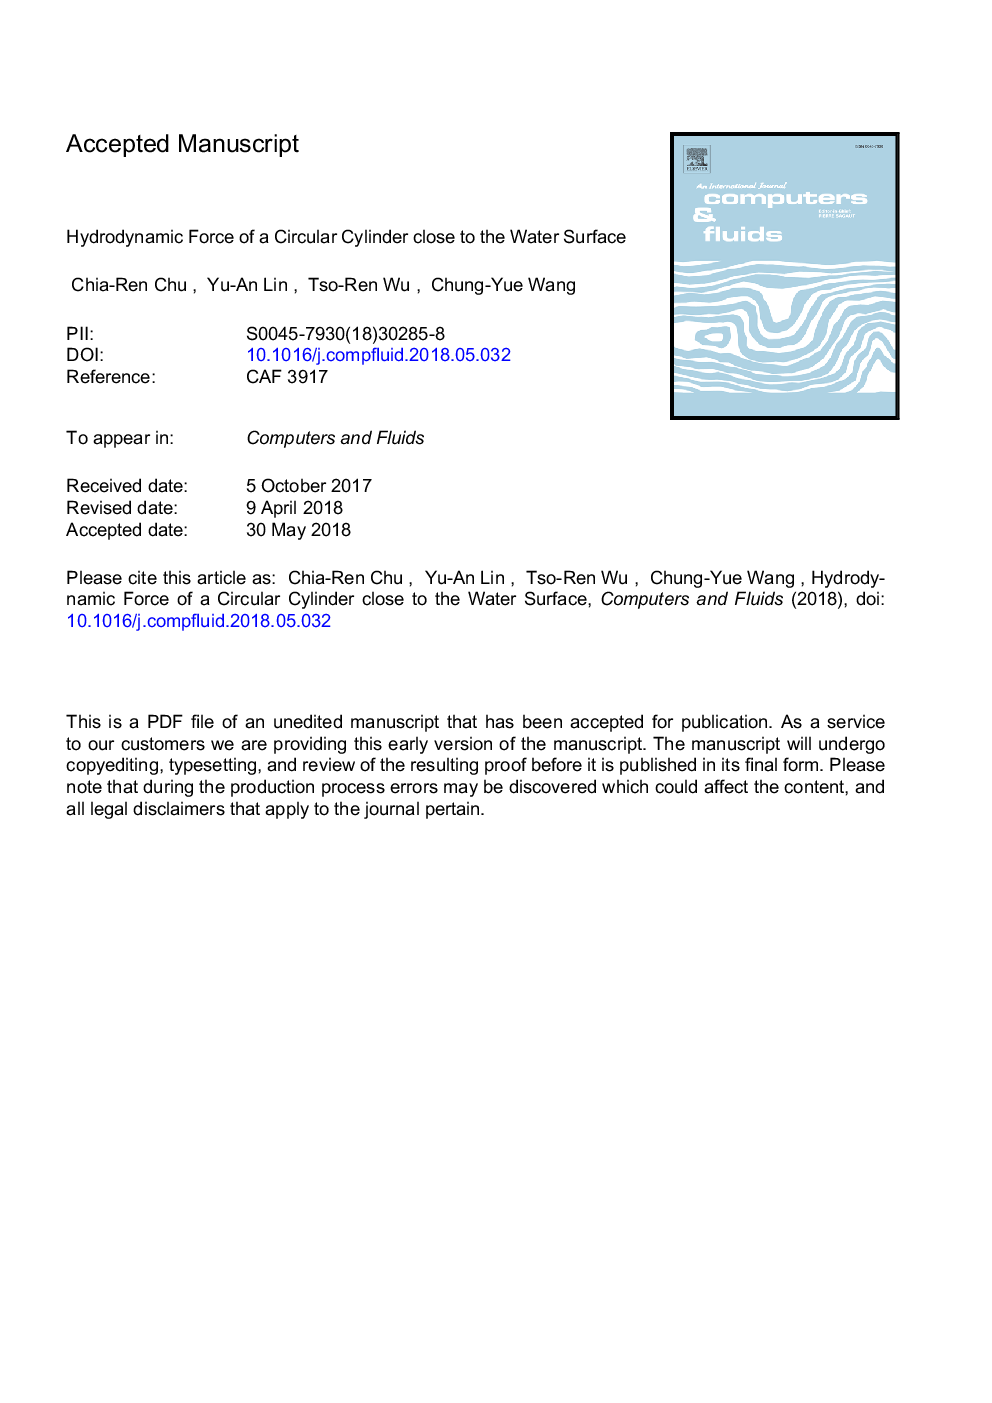 نیروی هیدرودینامیکی سیلندر دایره ای نزدیک به سطح آب 